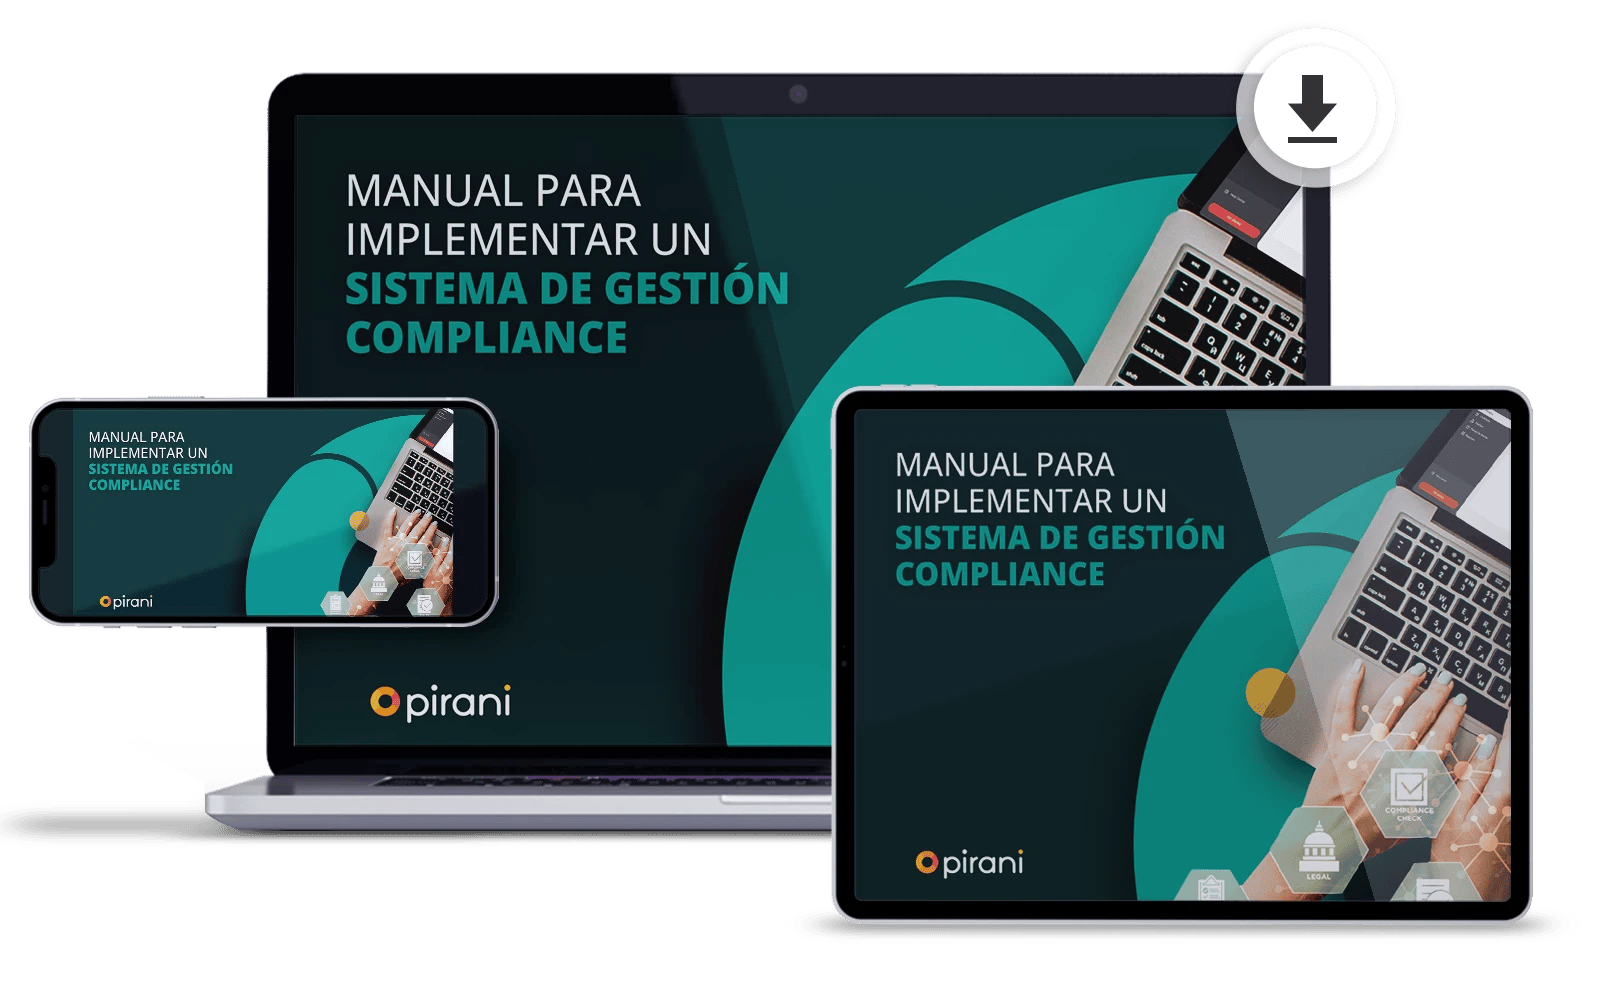 Ebook_download-Manual-para-implementar-un-sistema-de-gestion-Compliance